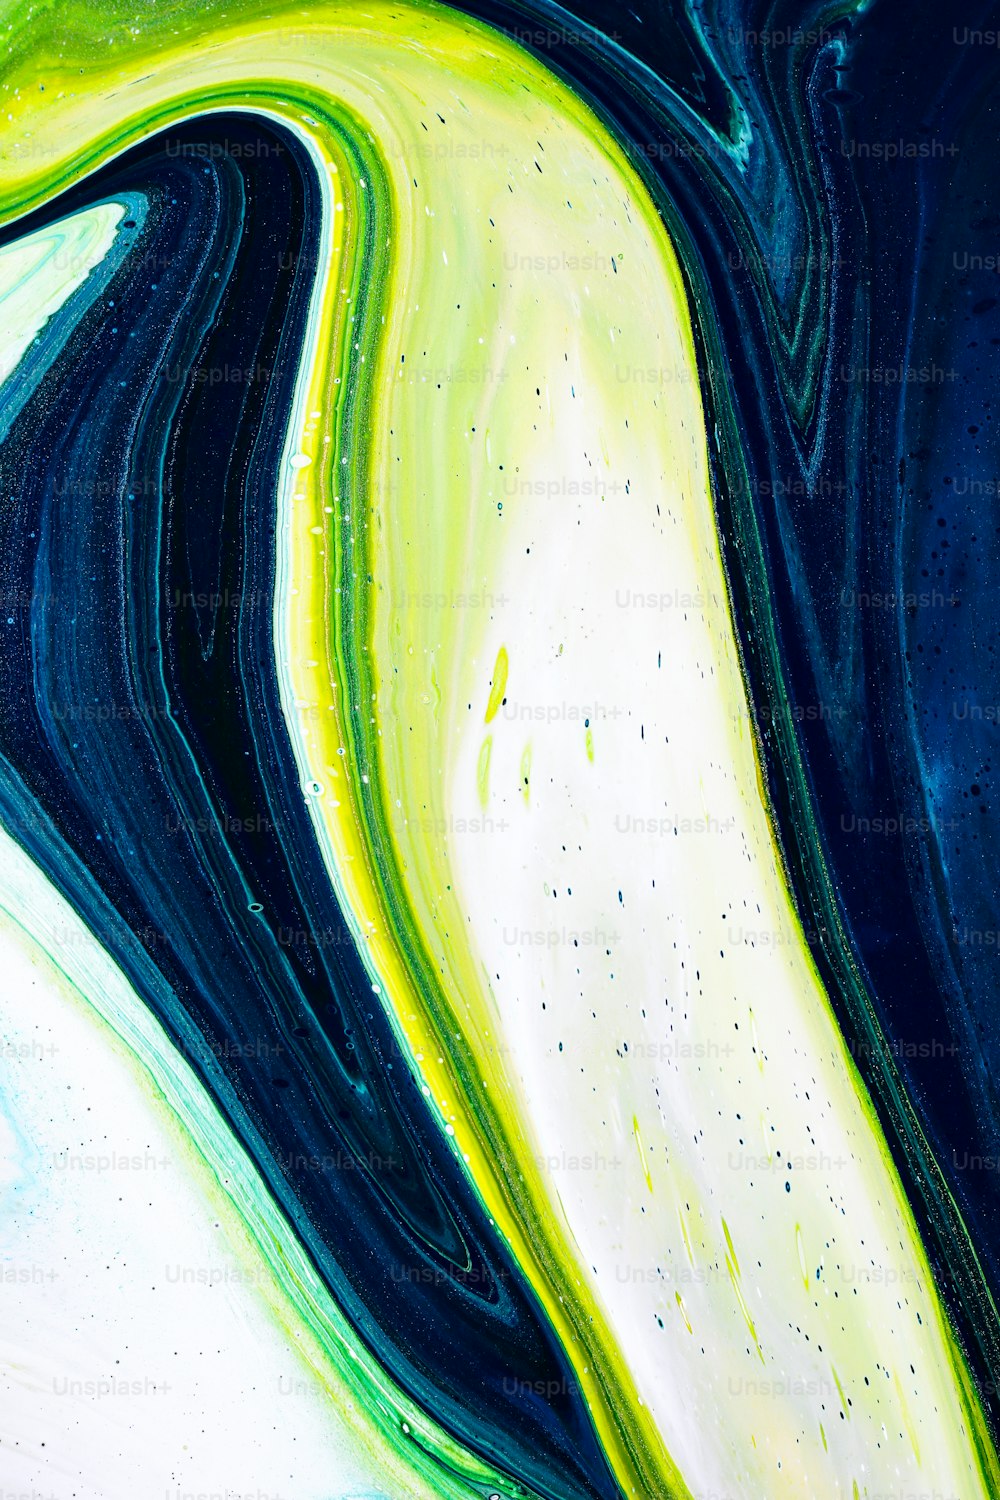 Un dipinto astratto di colori blu, giallo e verde